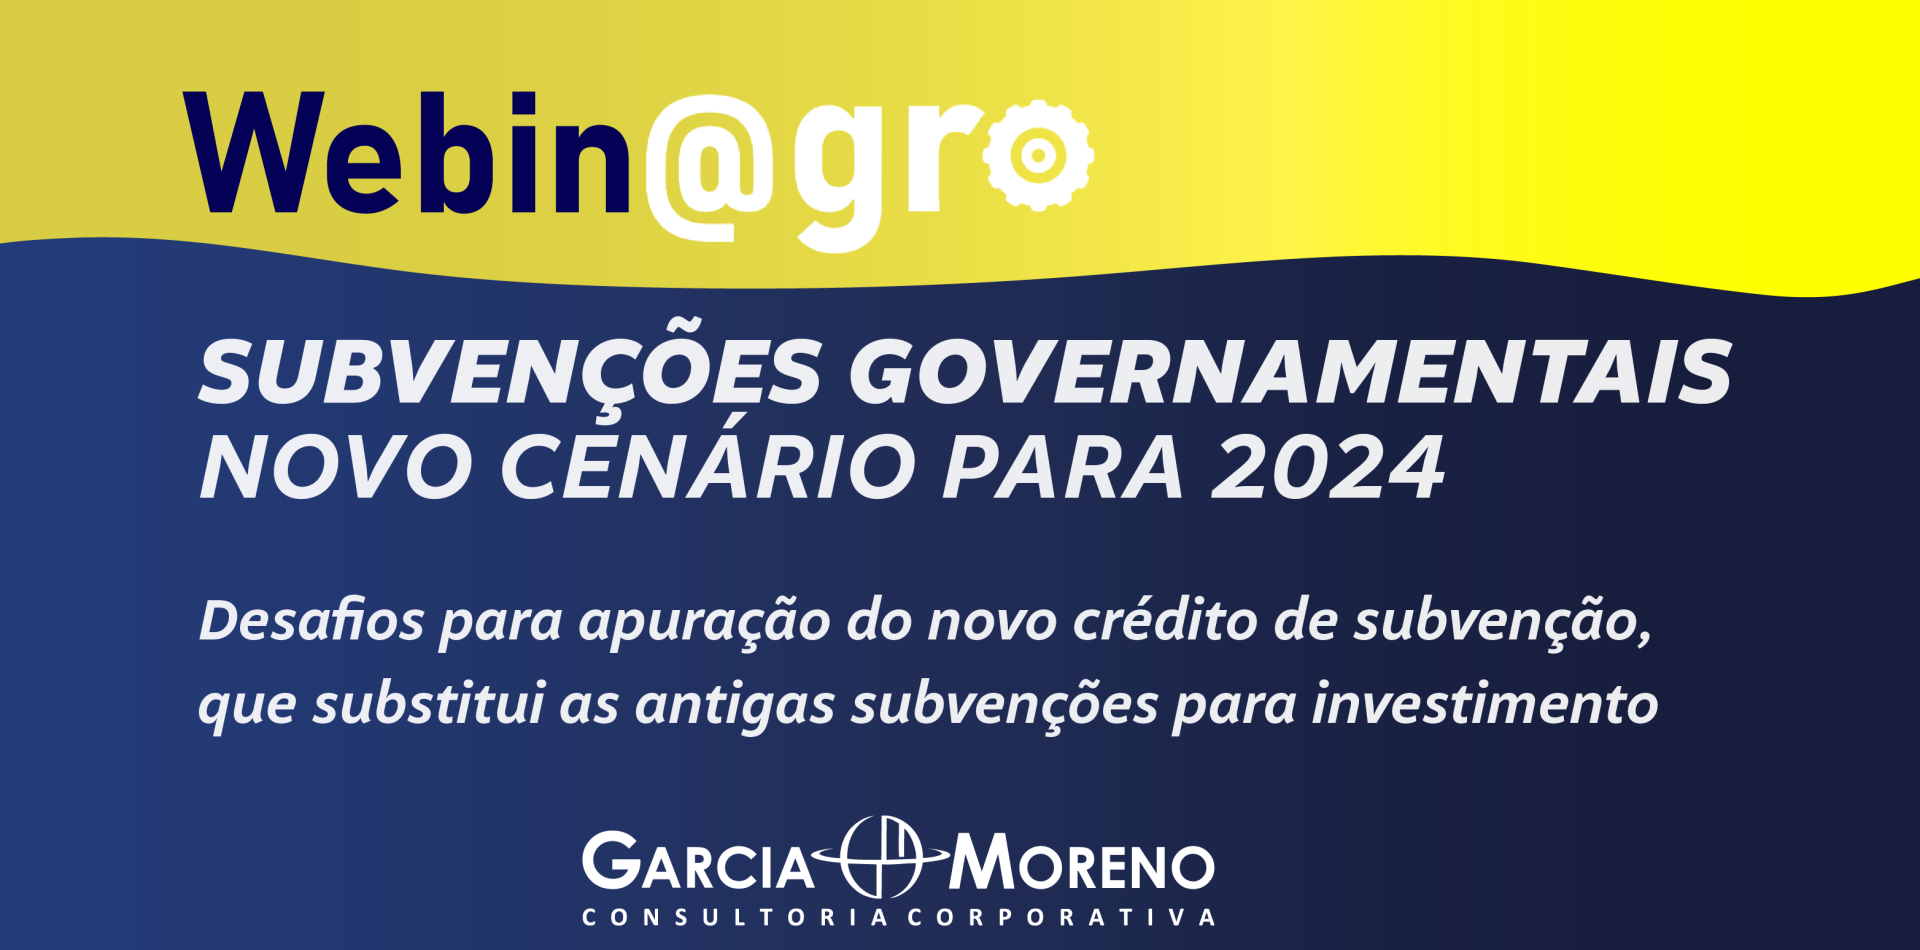 Webinagro IRPJ/CSLL: Subvenções Governamentais – Novo cenário para 2024